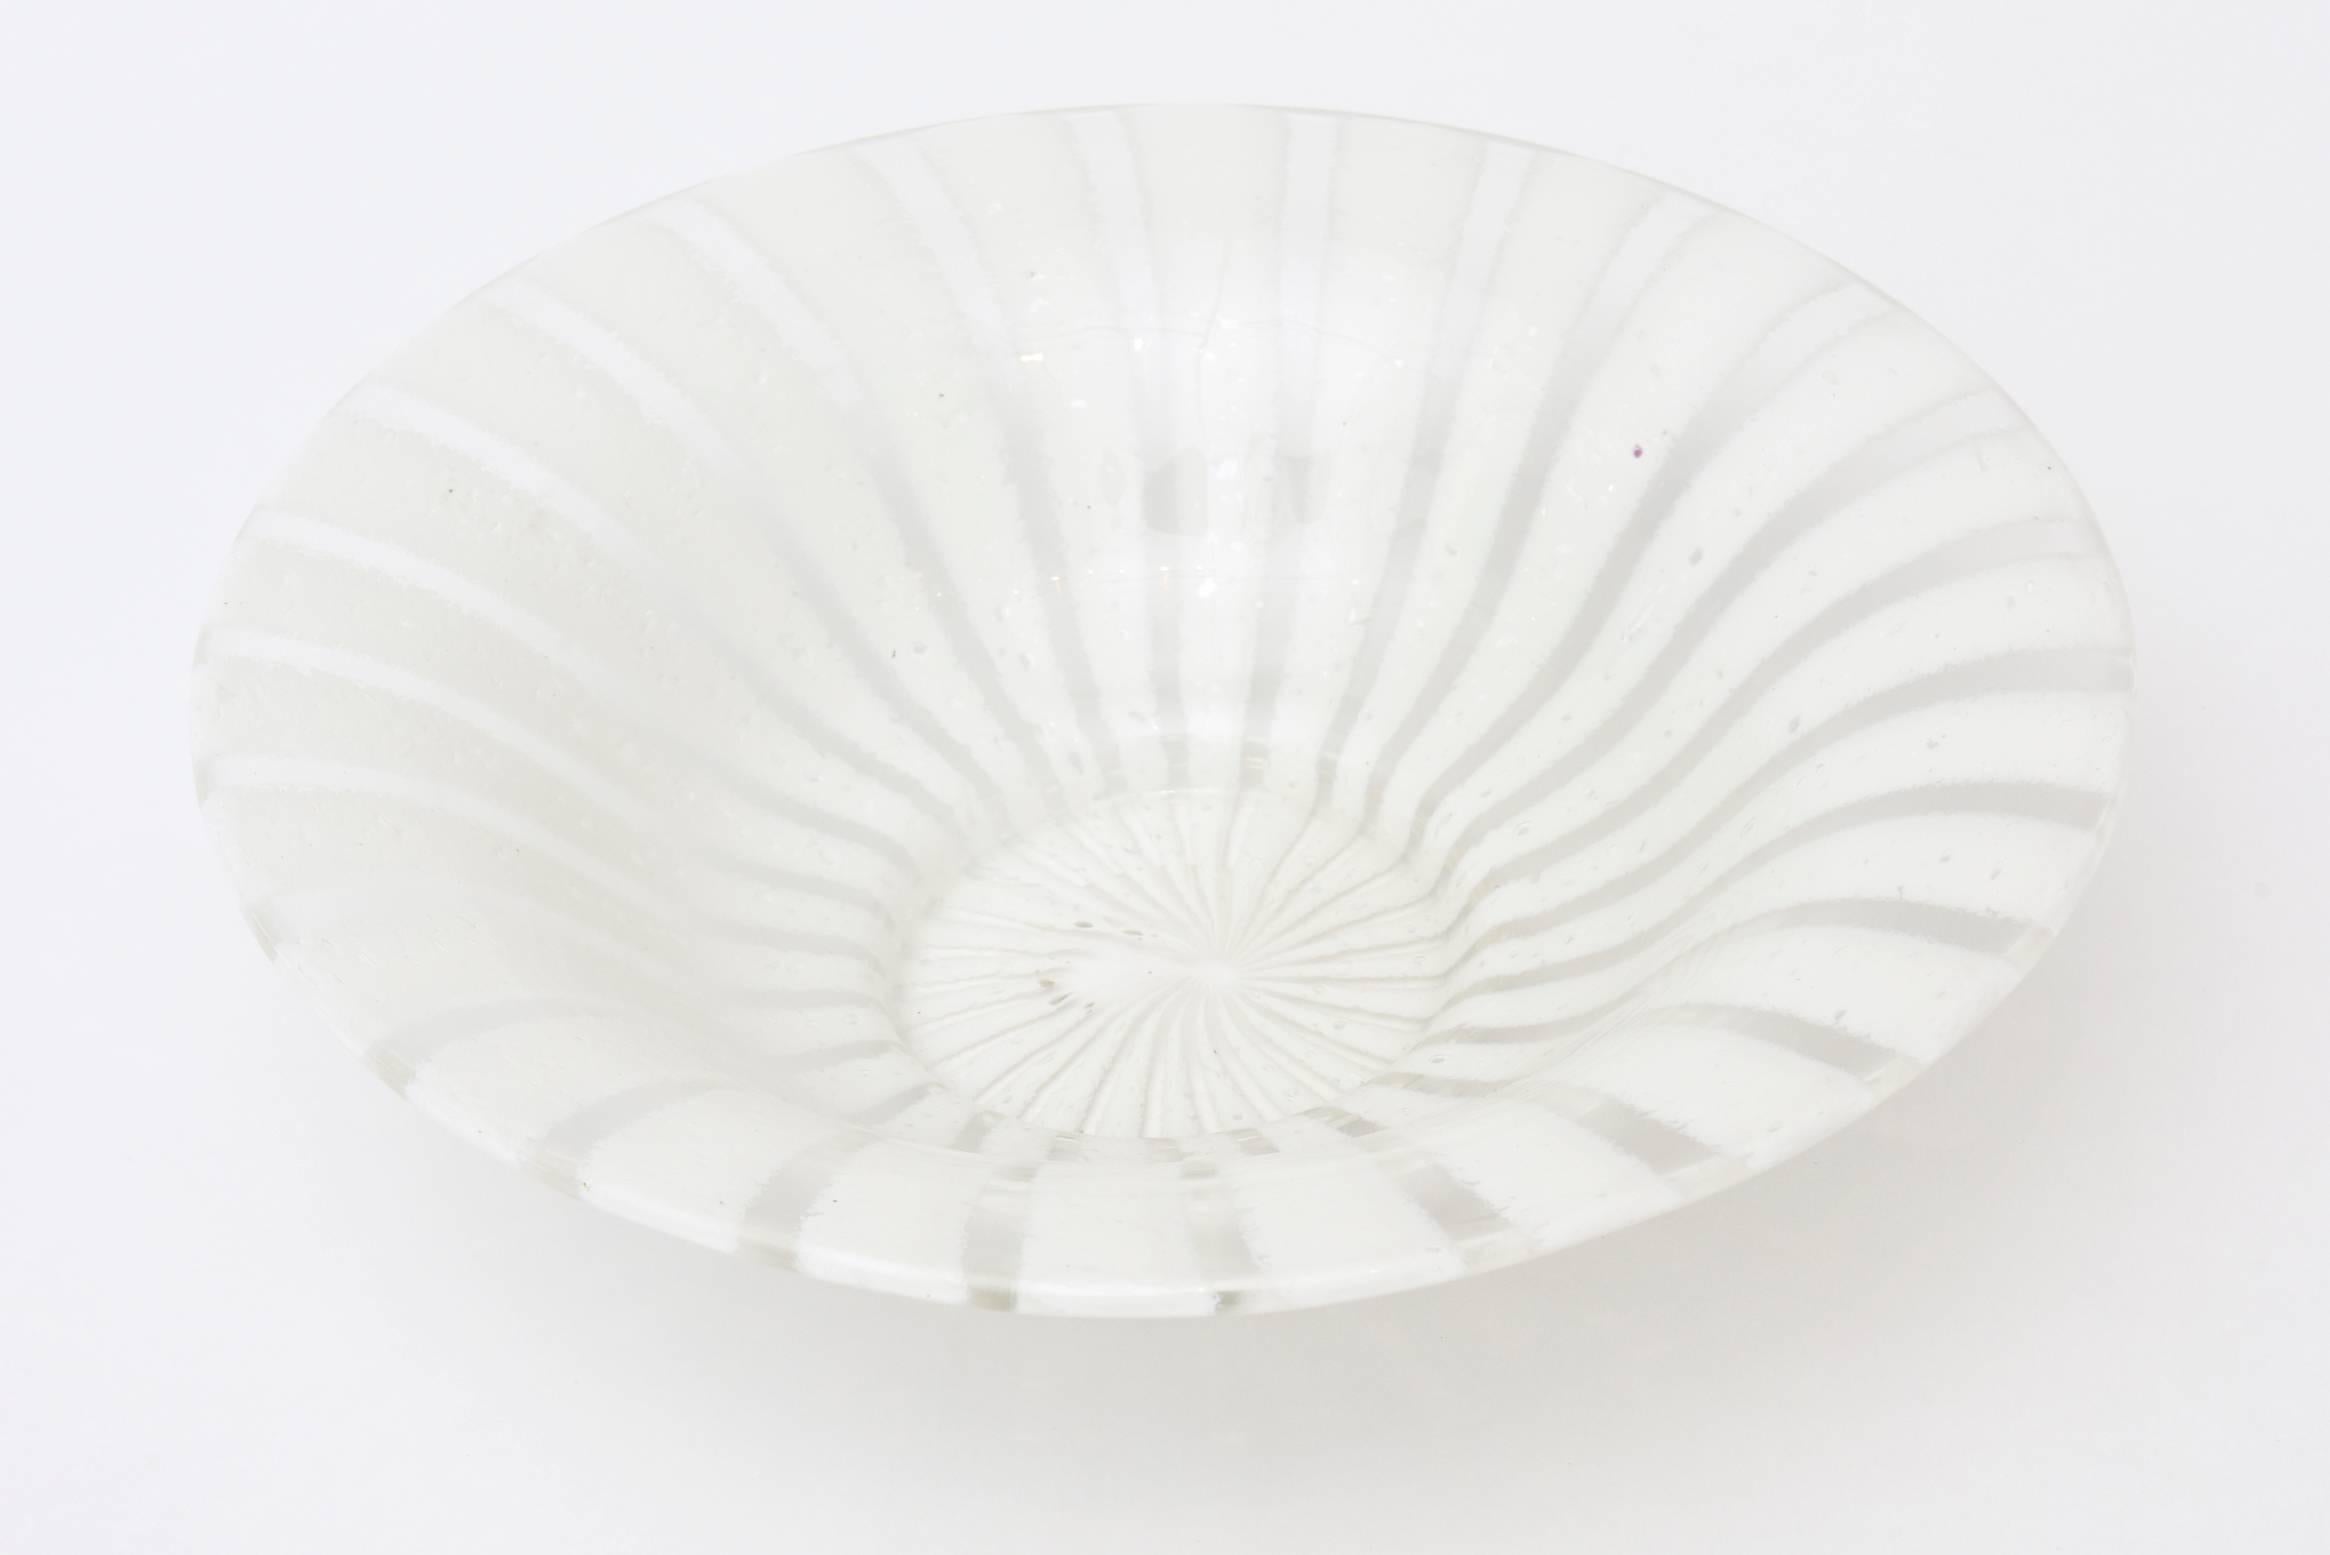 Diese fabelhafte italienische Venini Glas Murano Schale ist aus den 1960er Jahren. Sie ist aus weißem und klarem Glas in spiralförmigem Pinwheel-Design. Diese Schale ist eine Schönheit. Ideal zum Servieren oder einfach so. Sie hat einen Durchmesser